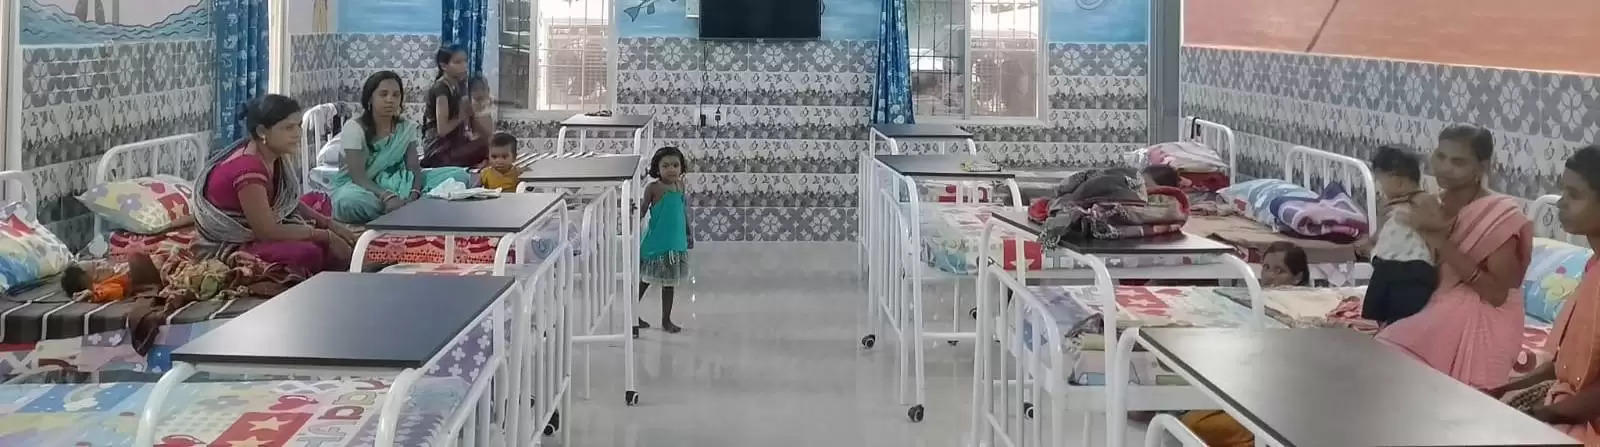 रायगढ़ जिले में संचालित एनआरसी केन्द्र में बच्चों का हो रहा बेहतर उपचार